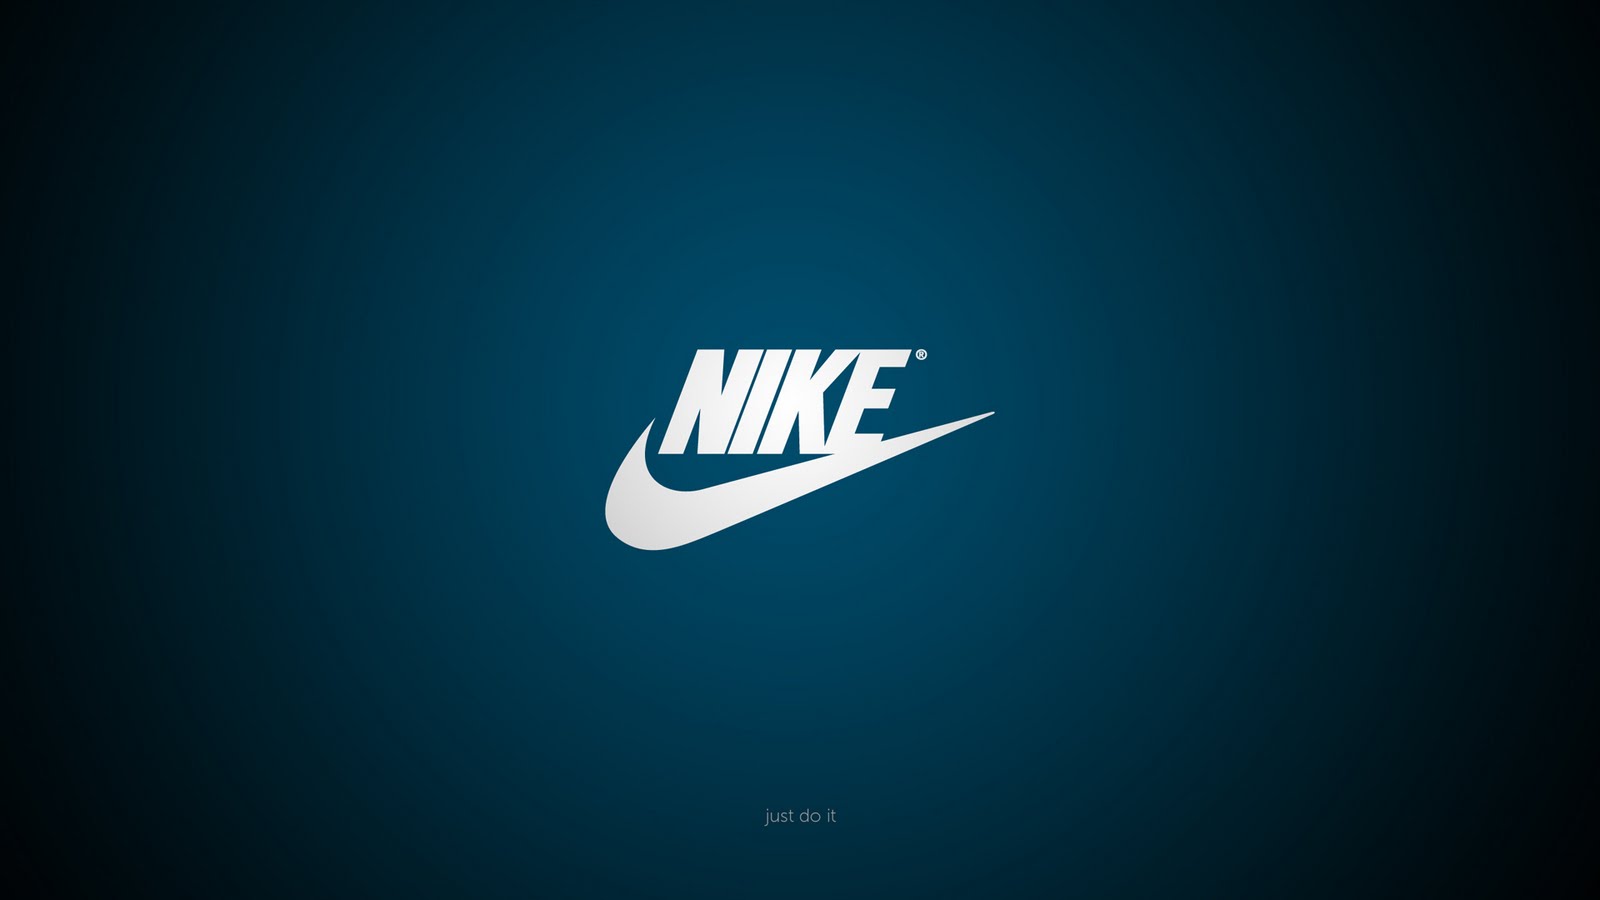 http://1.bp.blogspot.com/-GCHol9FVeUk/Tfm0GU1jtqI/AAAAAAAAB_8/qMaqiCT21oc/s1600/Blue+Background+Nike+Logo+Just+do+it+HD+Wallpaper.jpg